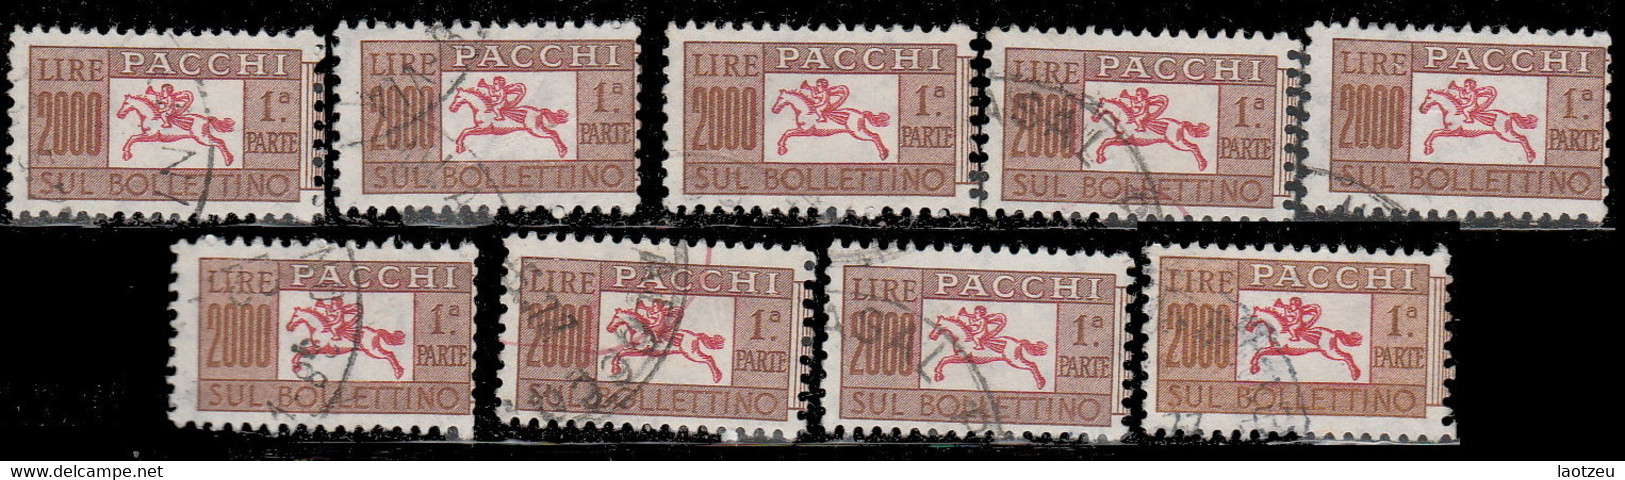 Italie Colis Postaux 1956. ~ CP 90 (par 9) - 2 000 L. Cor De Chasse - Colis-postaux